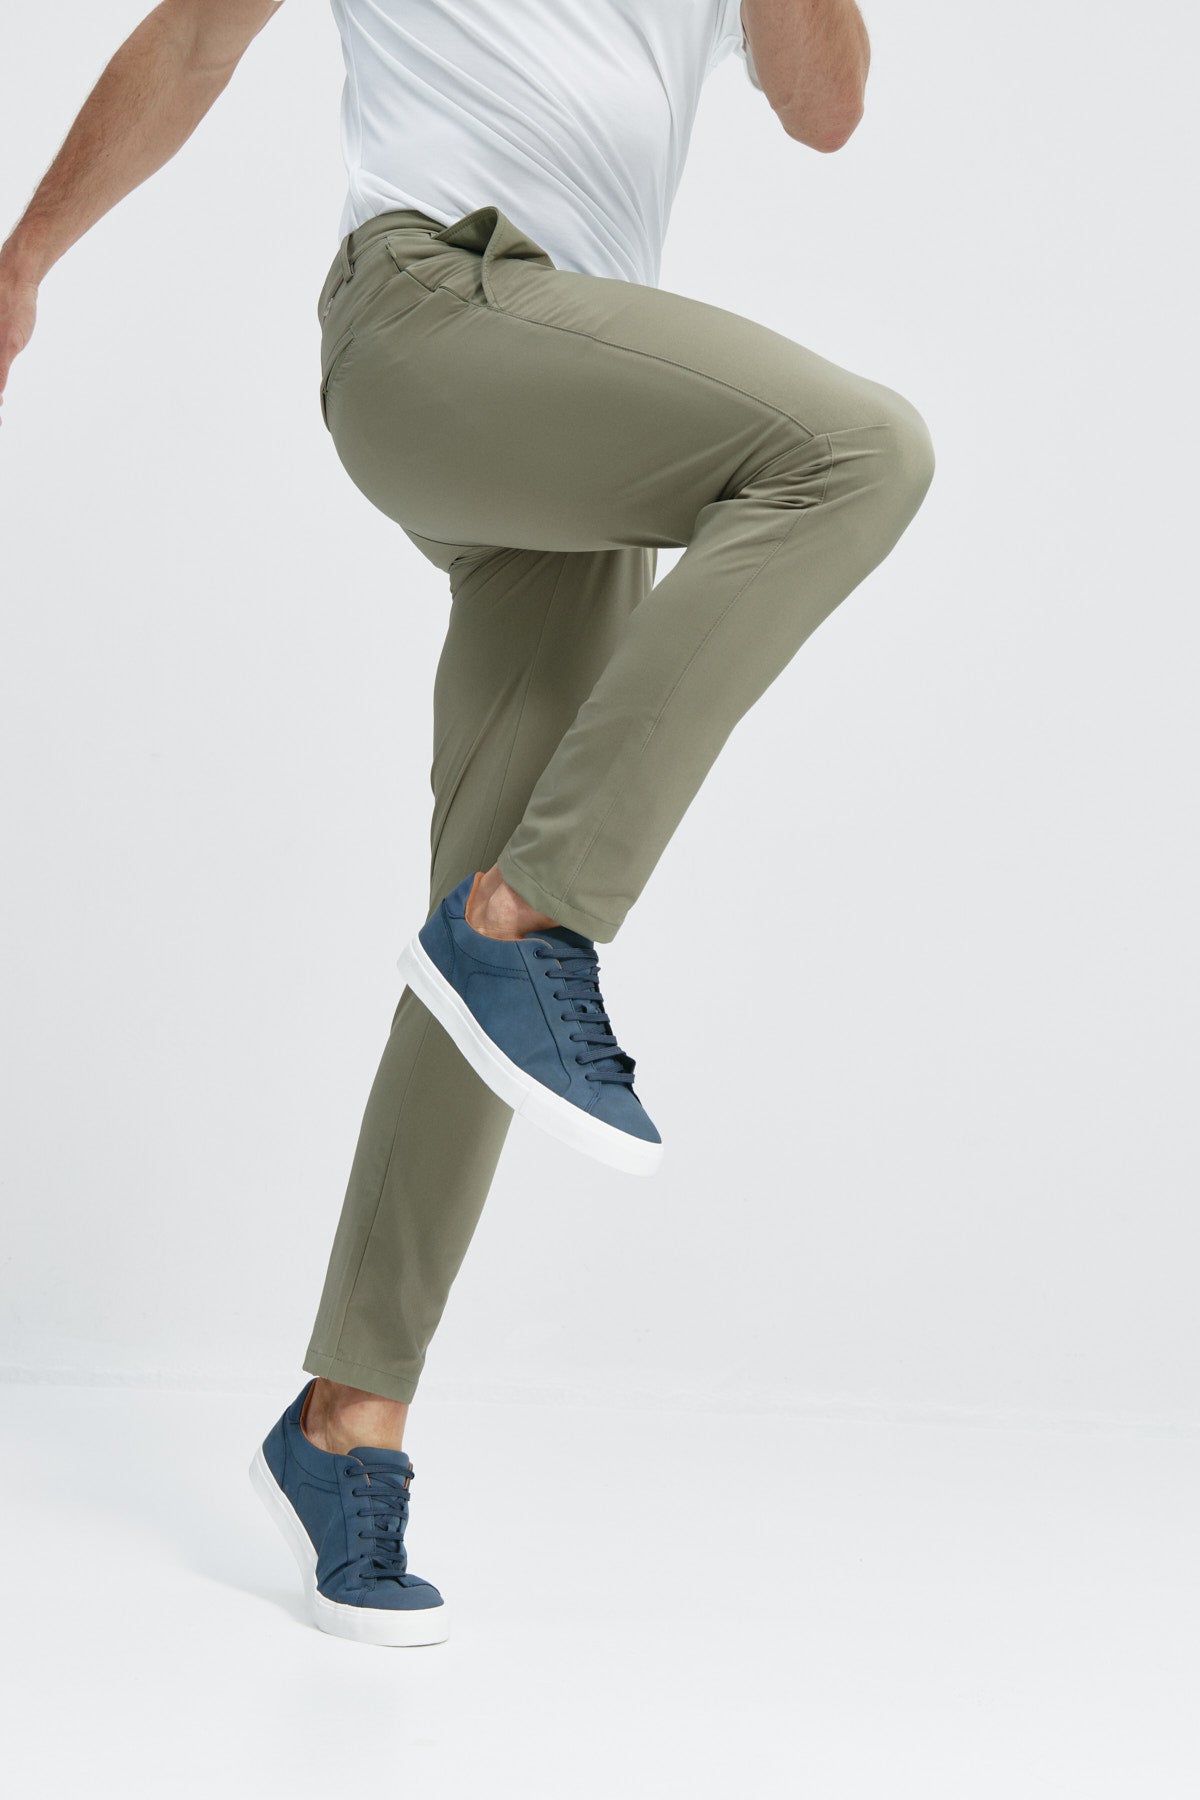 Pantalón de mujer: Pantalón de mujer que realza la figura y proporciona total libertad de movimiento. Foto flexibilidad.